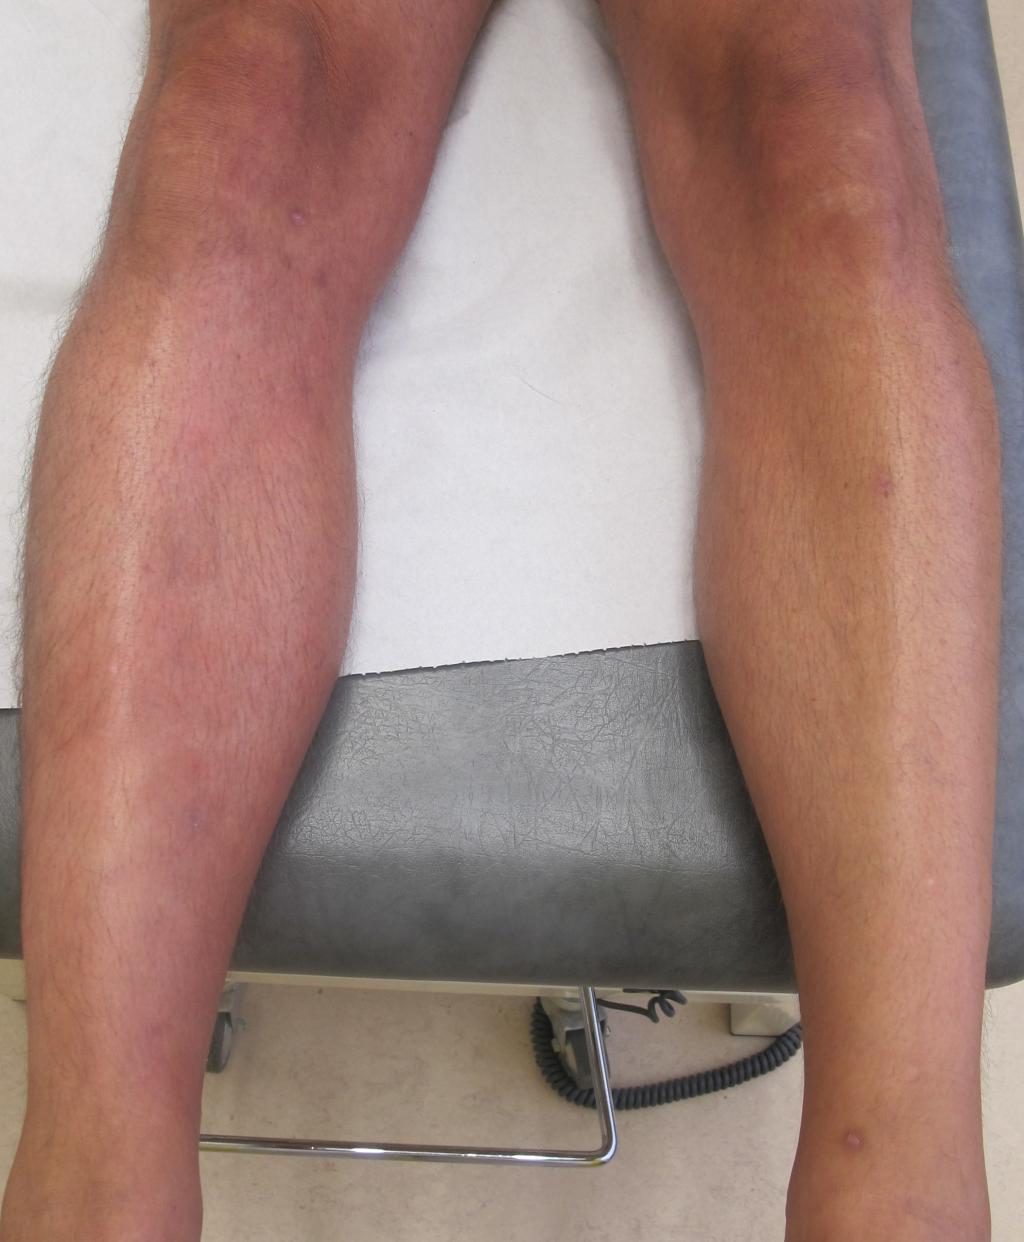 Rode benen op een doktersbed.